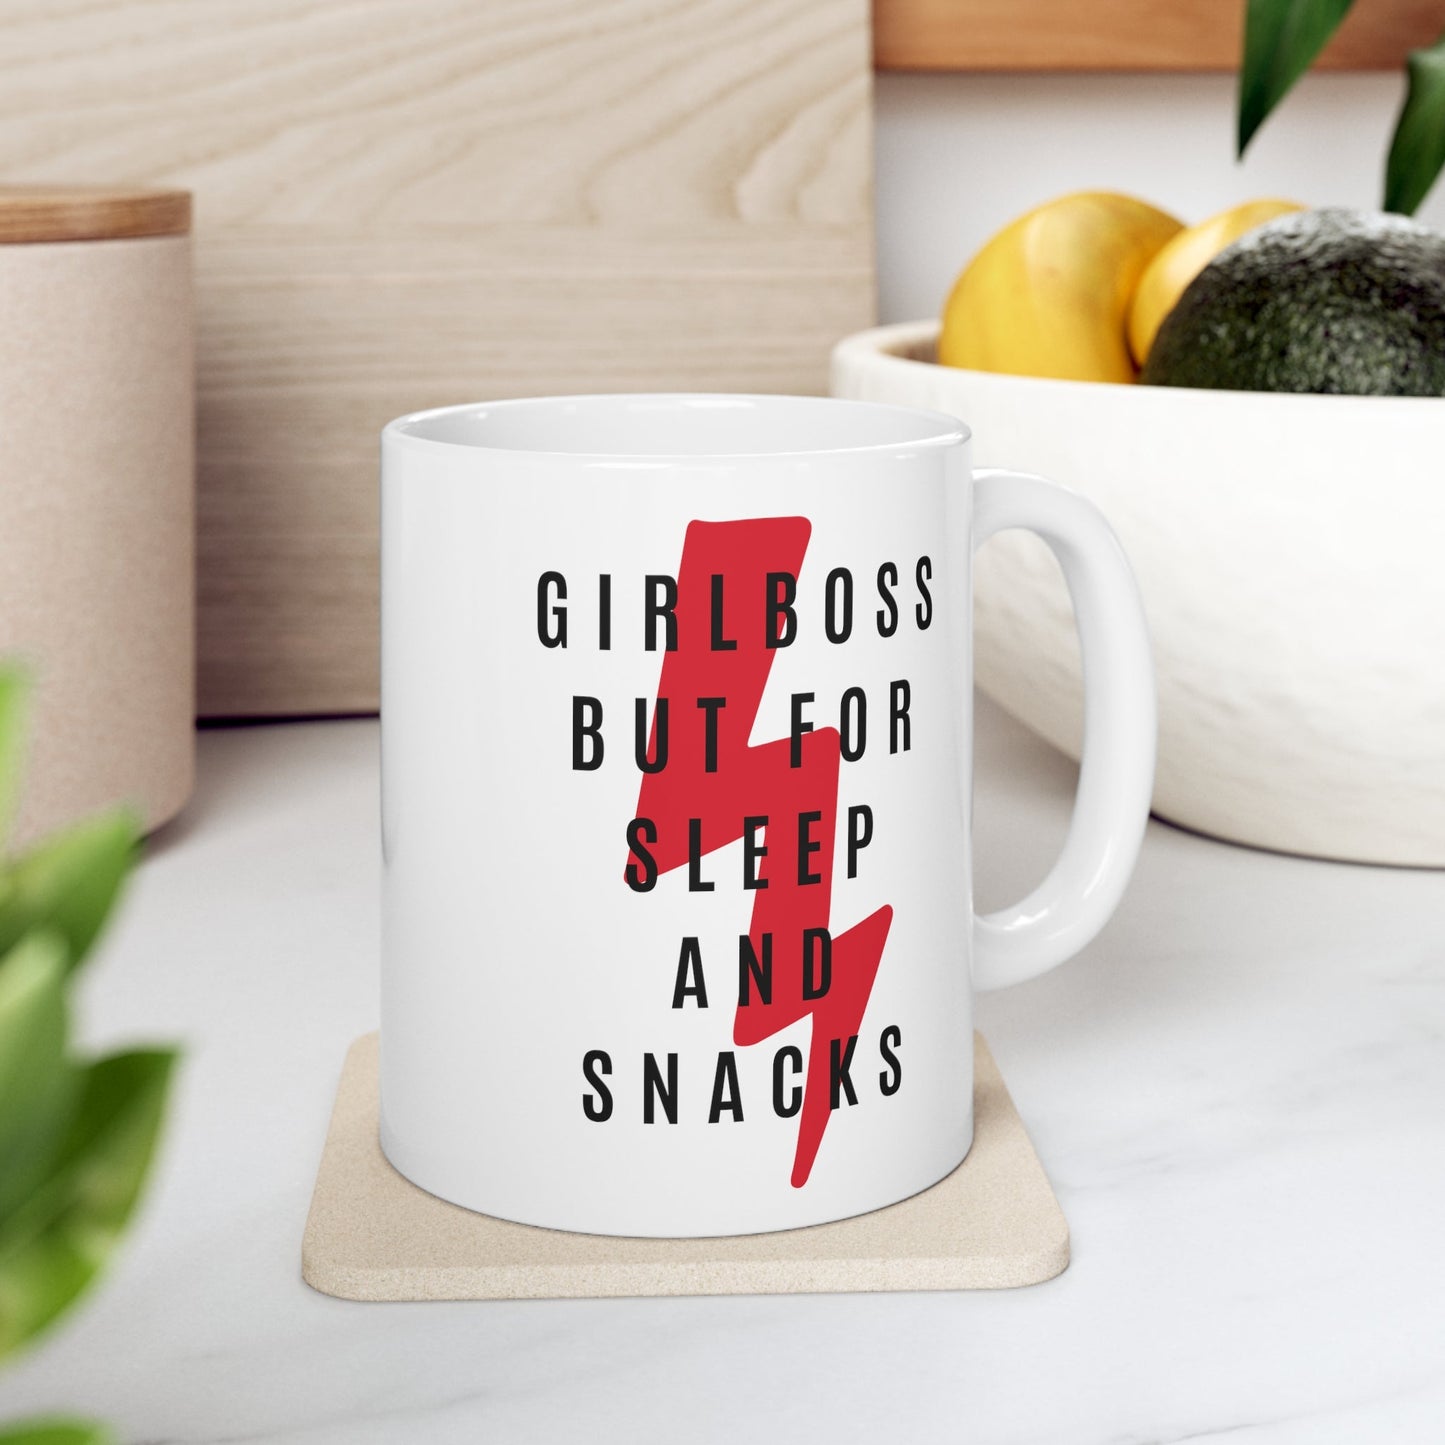 Girlboss But for Sleep and Snacks Ceramic Mug 11oz